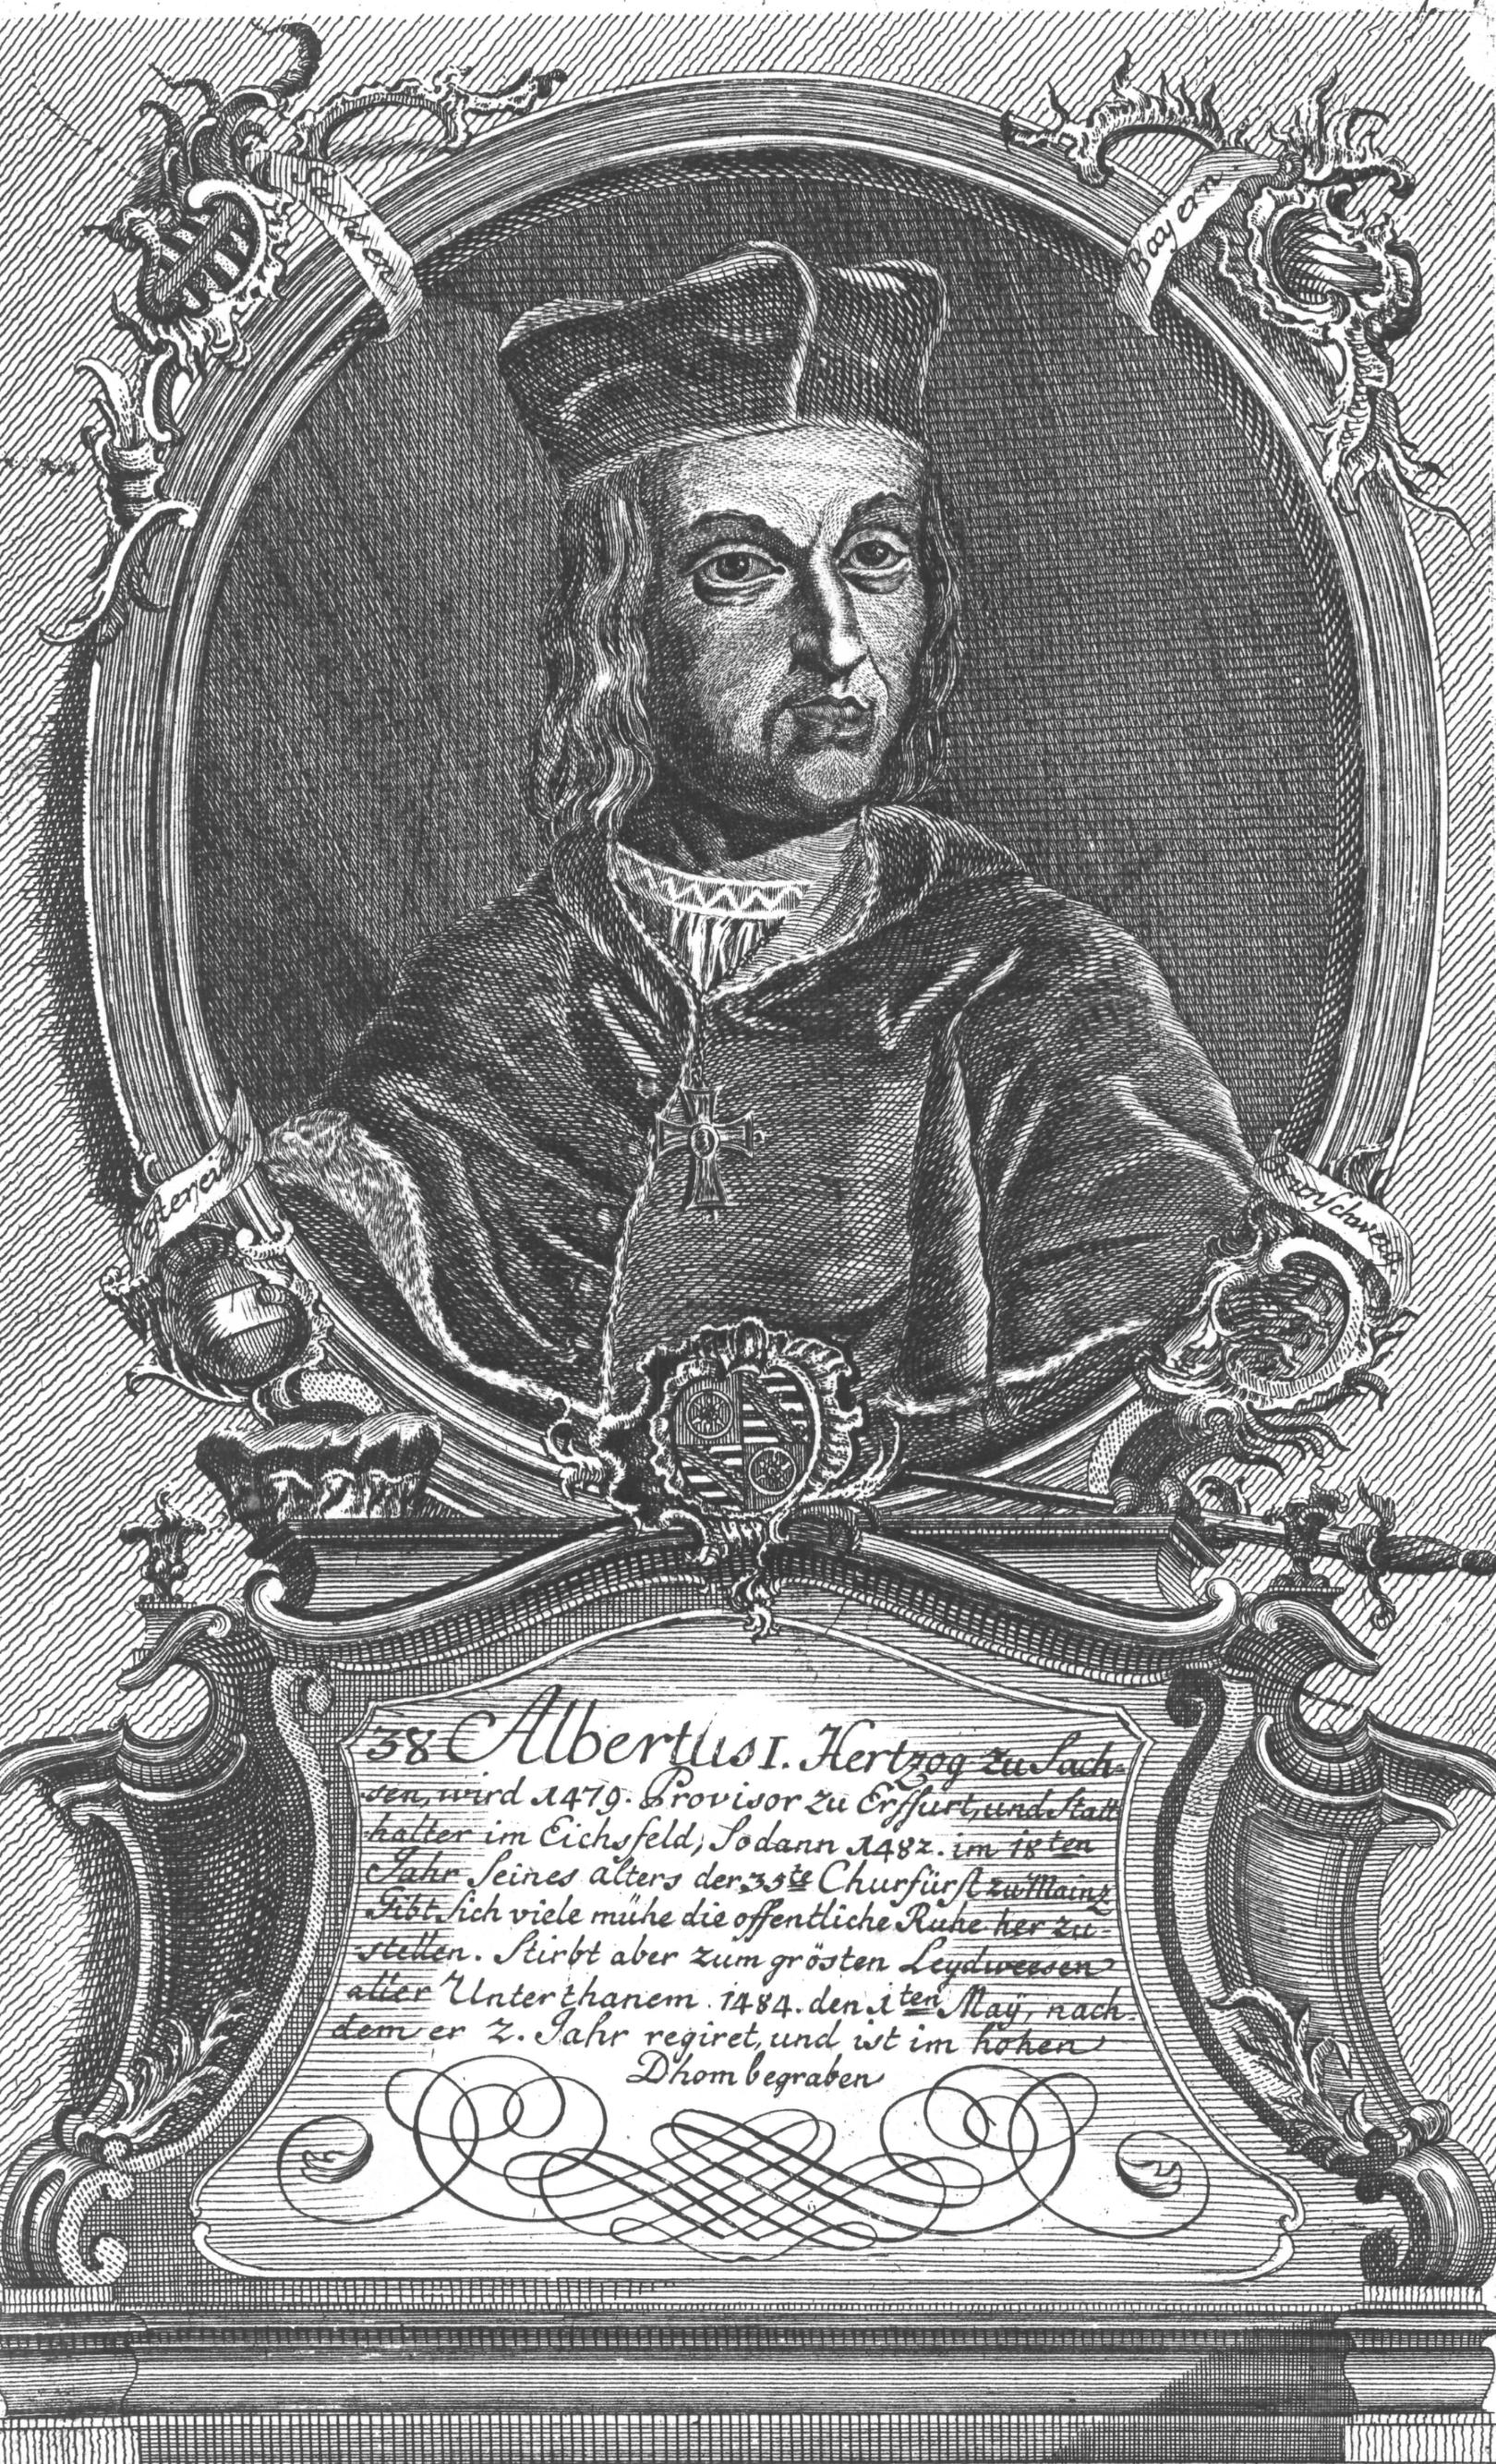 Adalbert III. von Sachsen, gezeichnet von Wilhelm Christian Rücker, ca. 1774 (c) Wilhelm Christian Rücker / IMKG